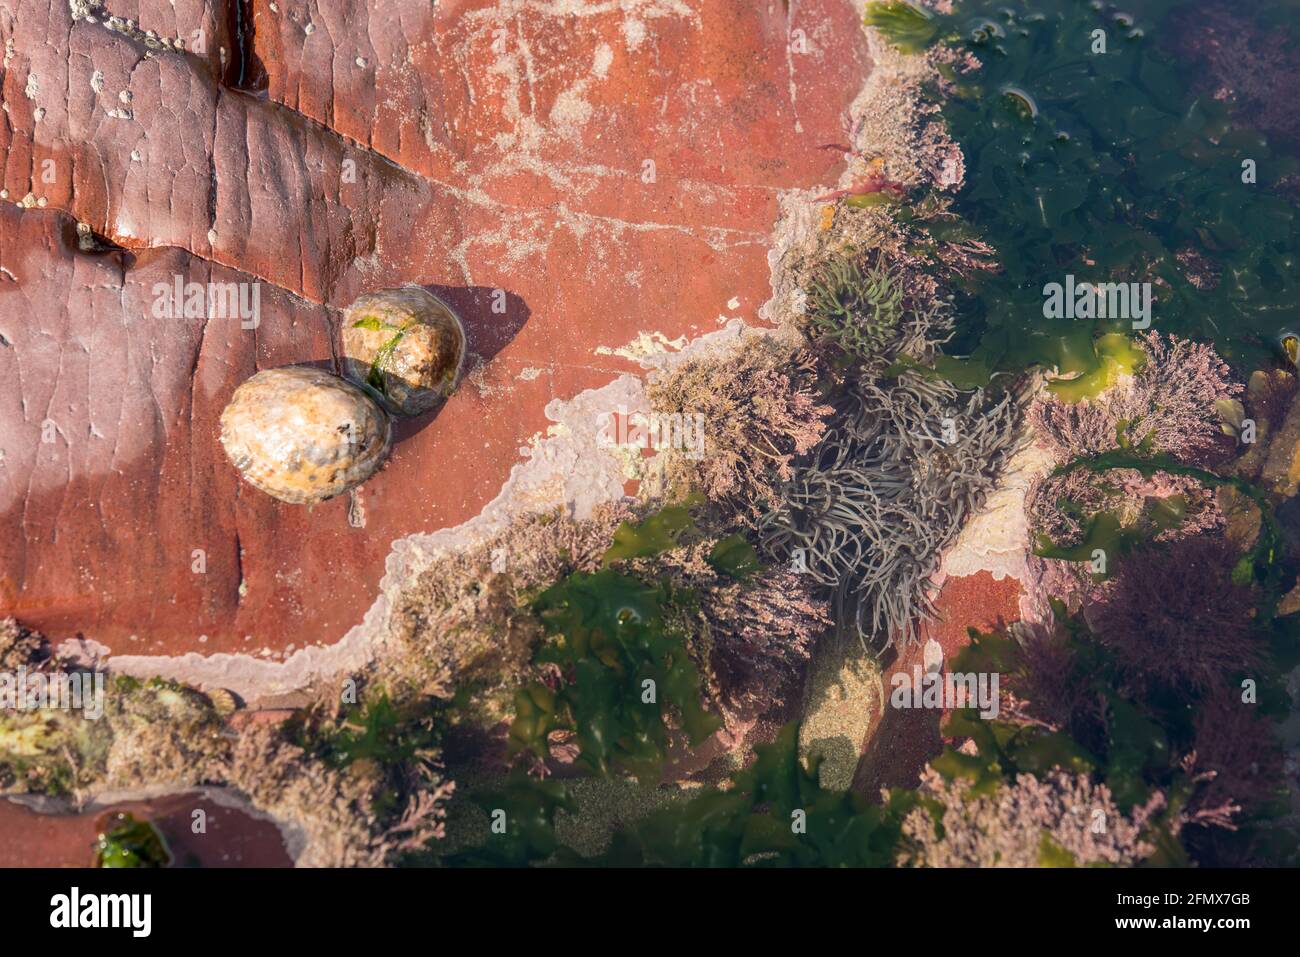 Limpinas comunes, malezas coralinas (Corallina officinallis), anémonas de alce (Anemonia viridis) y lechuga de mar (Ulva lactuca) en poza de roca Foto de stock